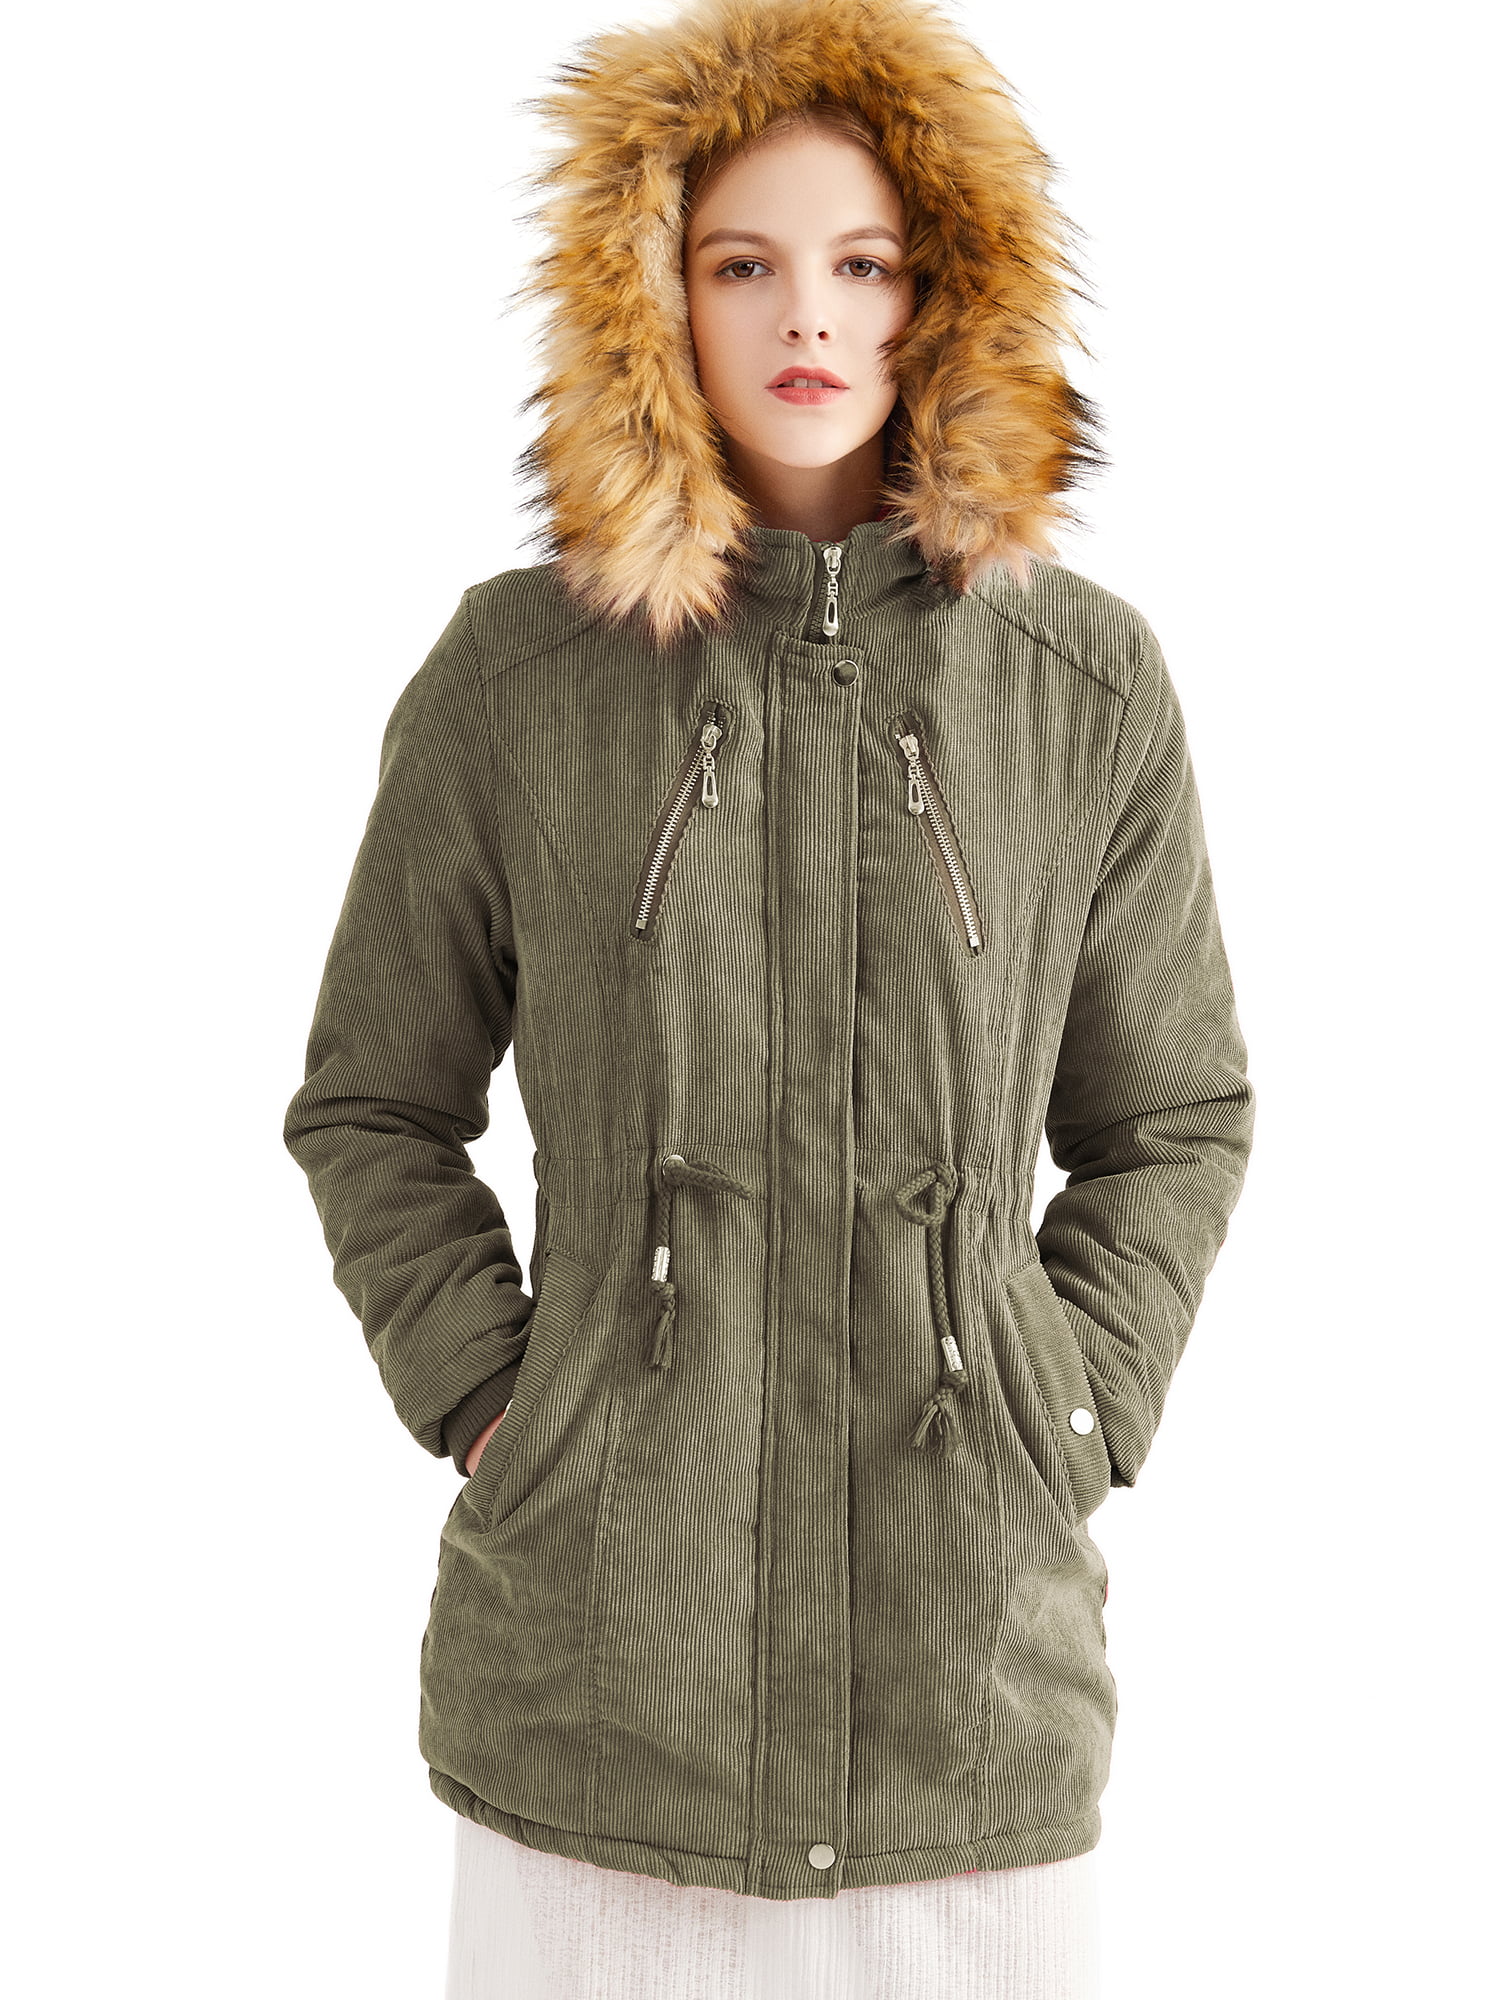 Women/'s Winter Thicken Coats Long Sleeve Warm Jacket Outerwear Zipper Overcoats